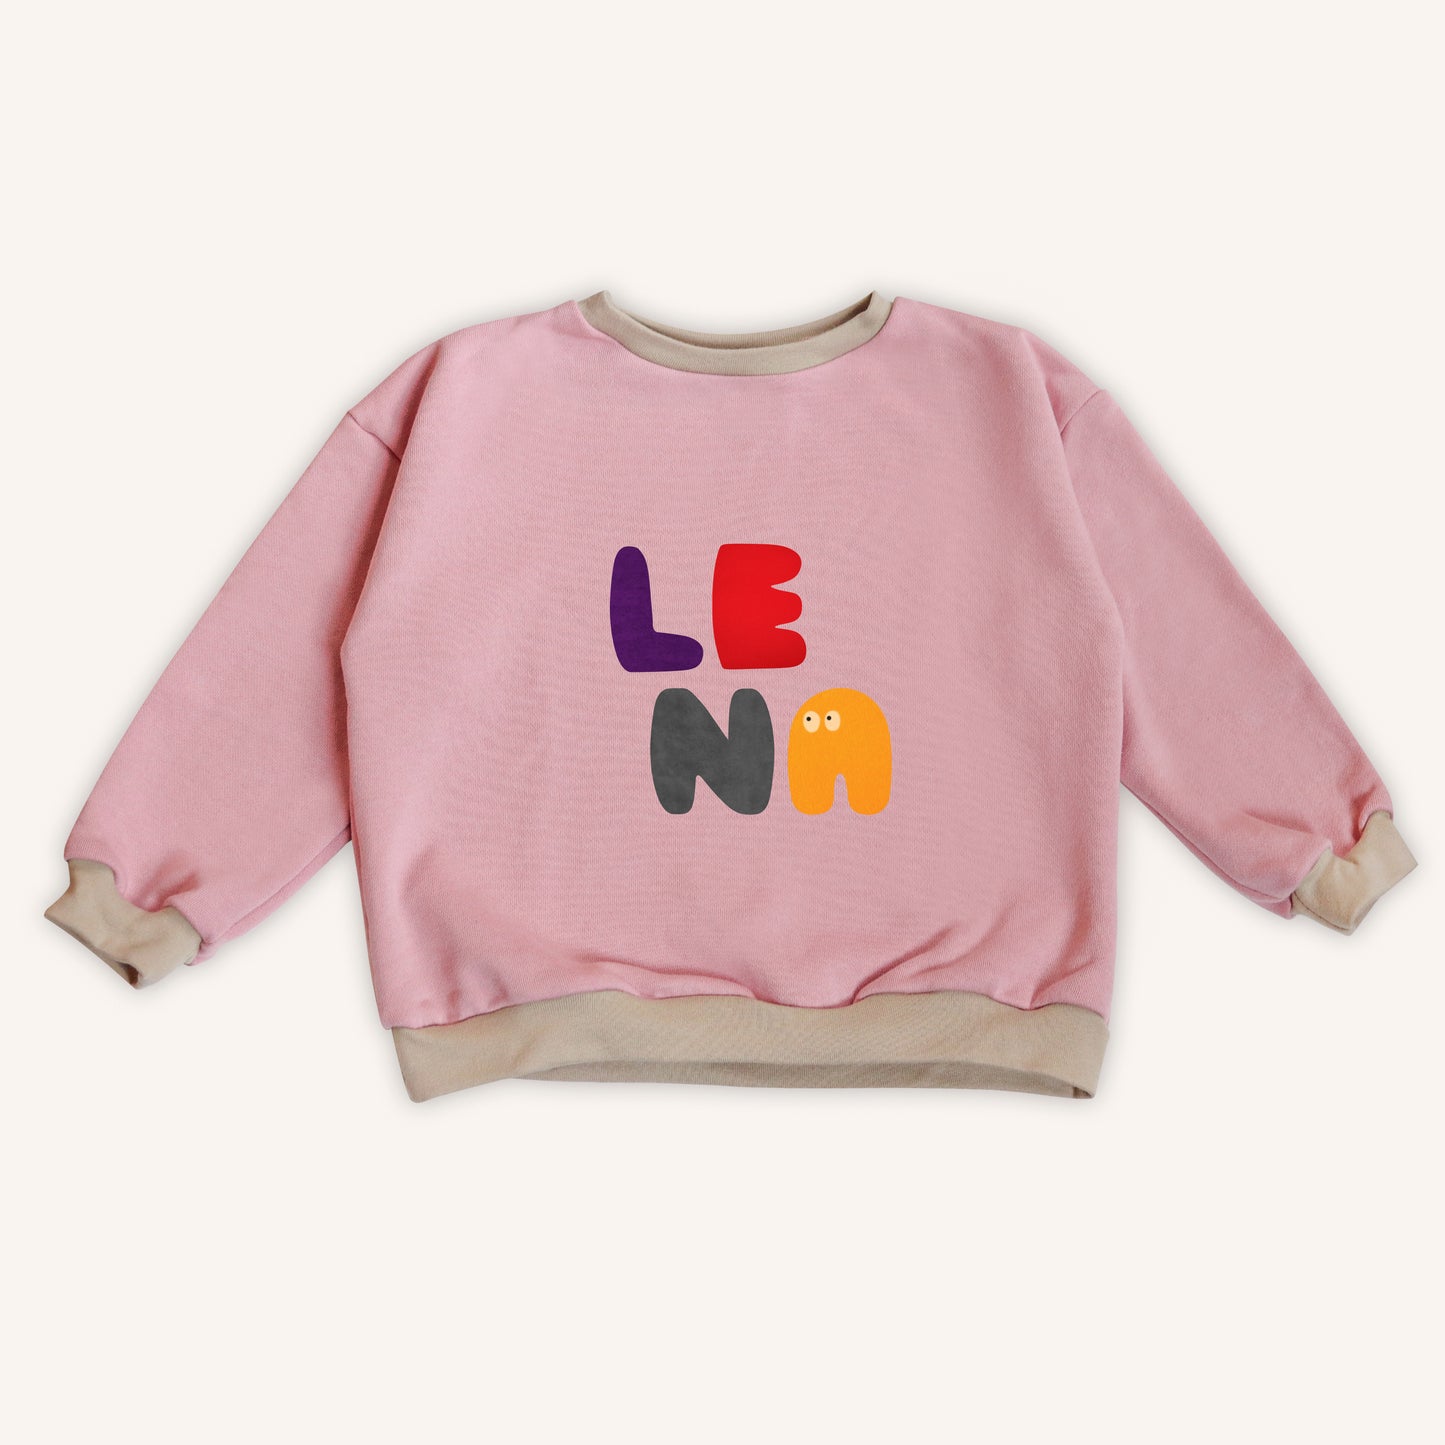 Rose Pink - personalised kids sweatshirt